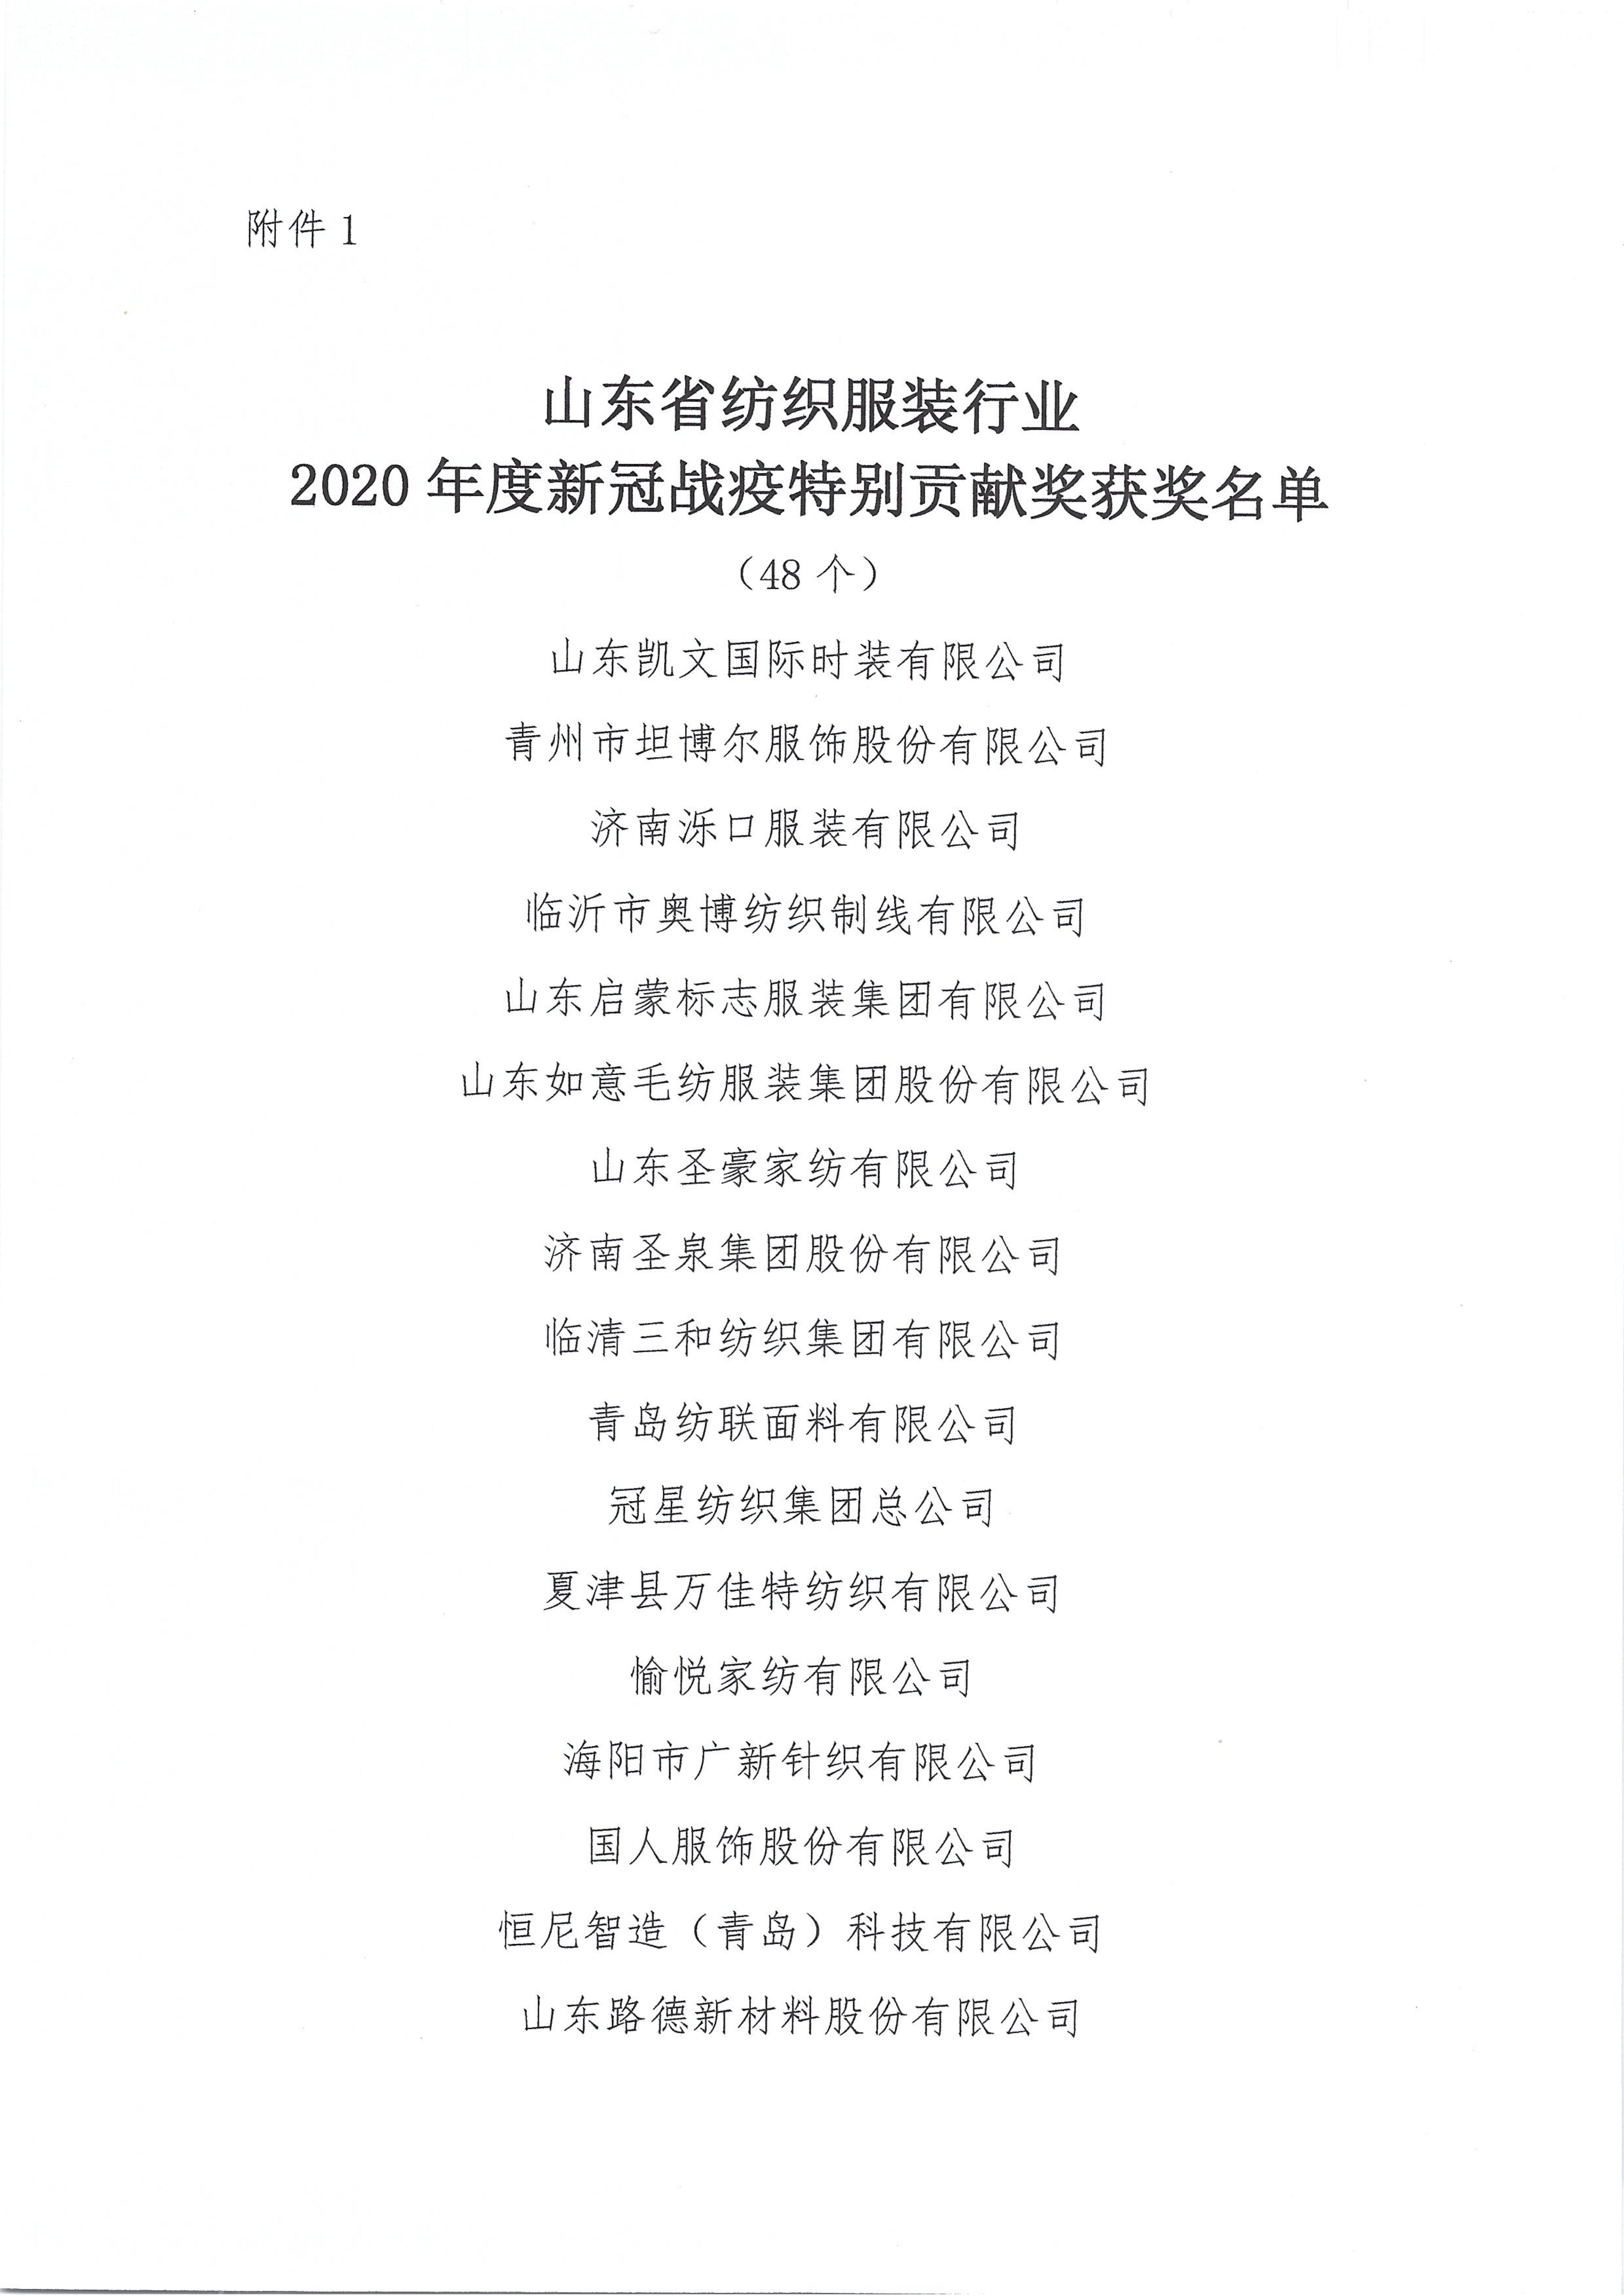 關于授予2020年度山東省紡織服裝行業新冠戰疫特別貢獻獎等獎項的決定_03.jpg